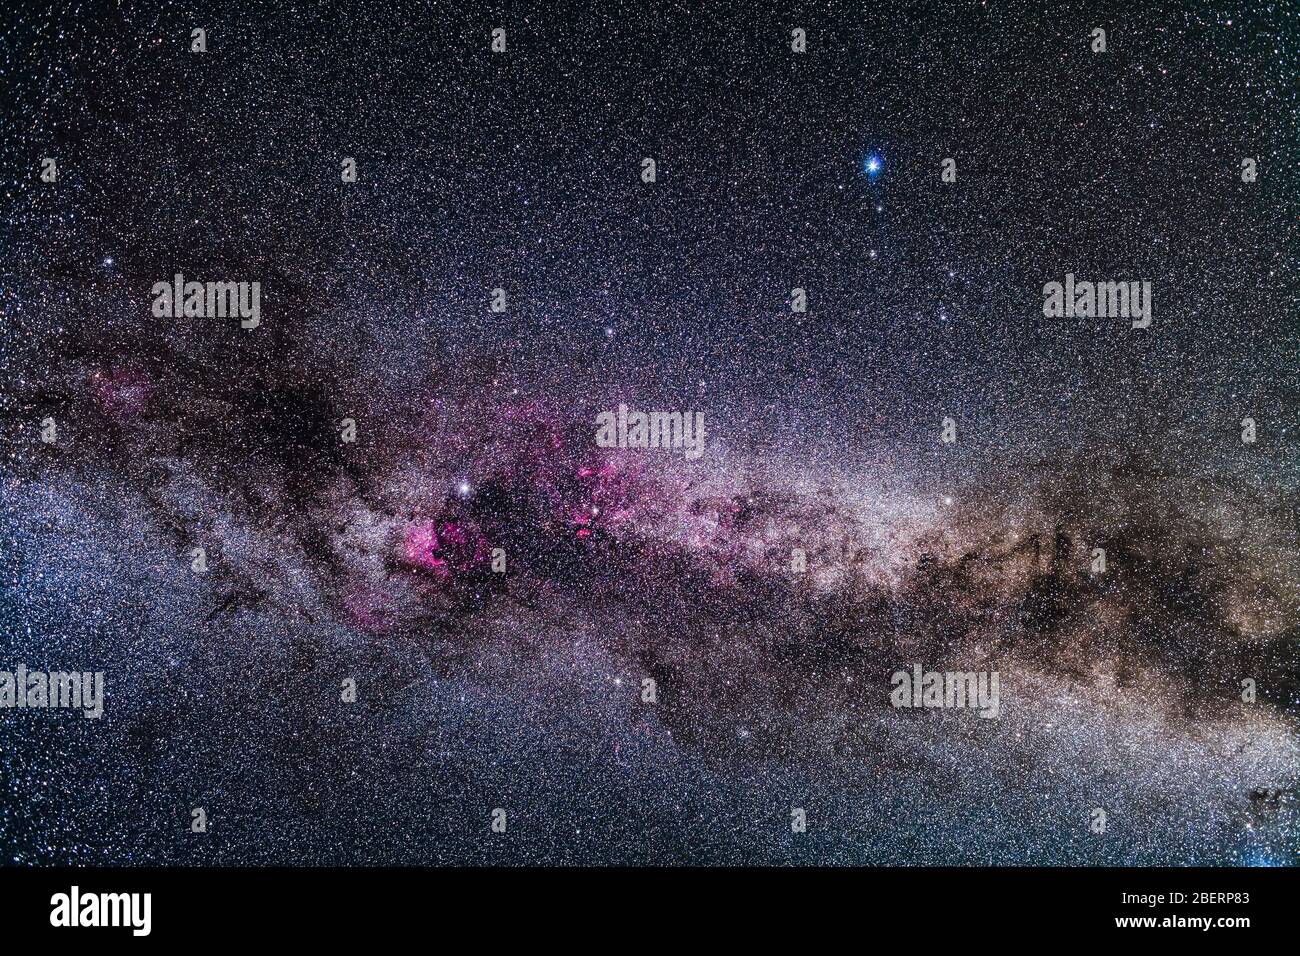 Die Sternbilder Cygnus und Lyra in der Nordsommermilchstraße. Stockfoto